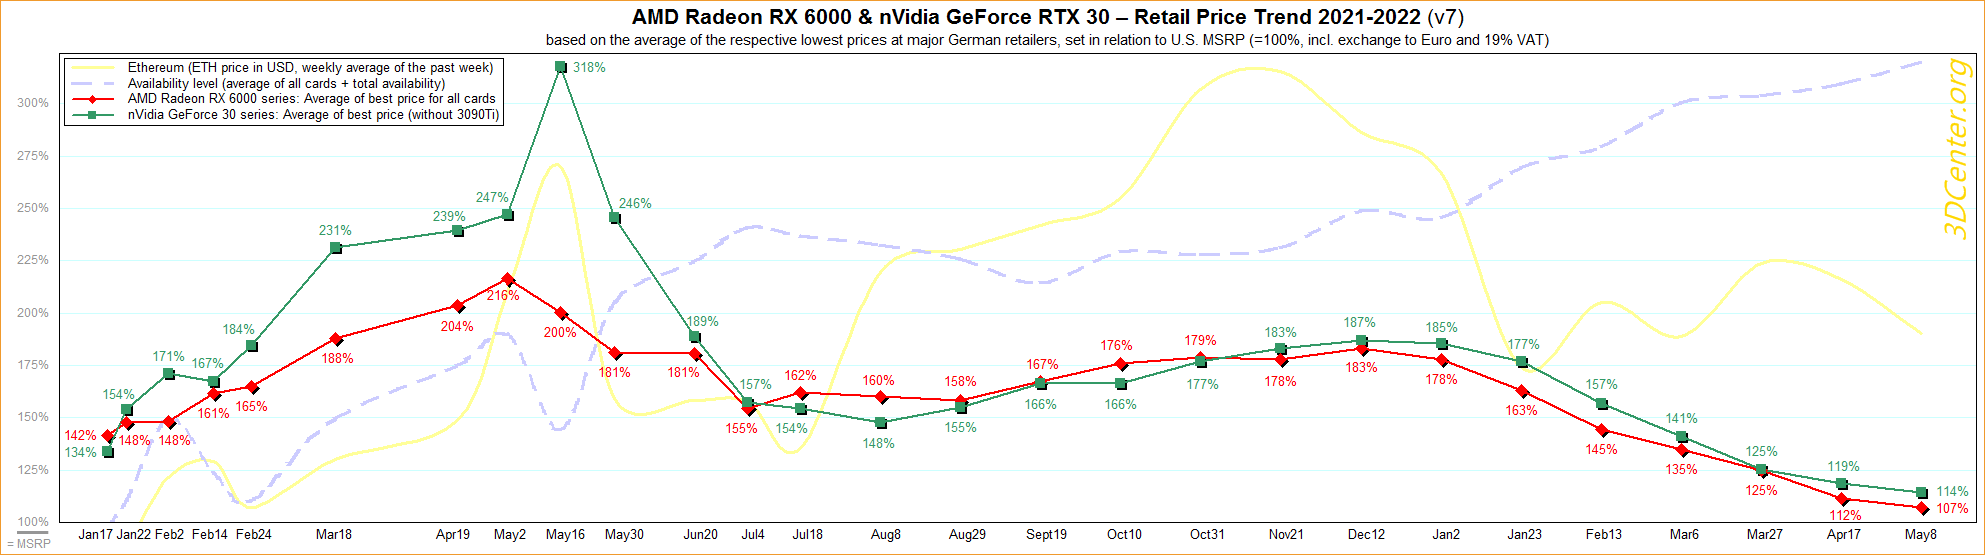 https://blog.dateks.lv/wp-content/uploads/2022/05/AMD-nVidia-Retail-Price-Trend-2021-2022-v7.png